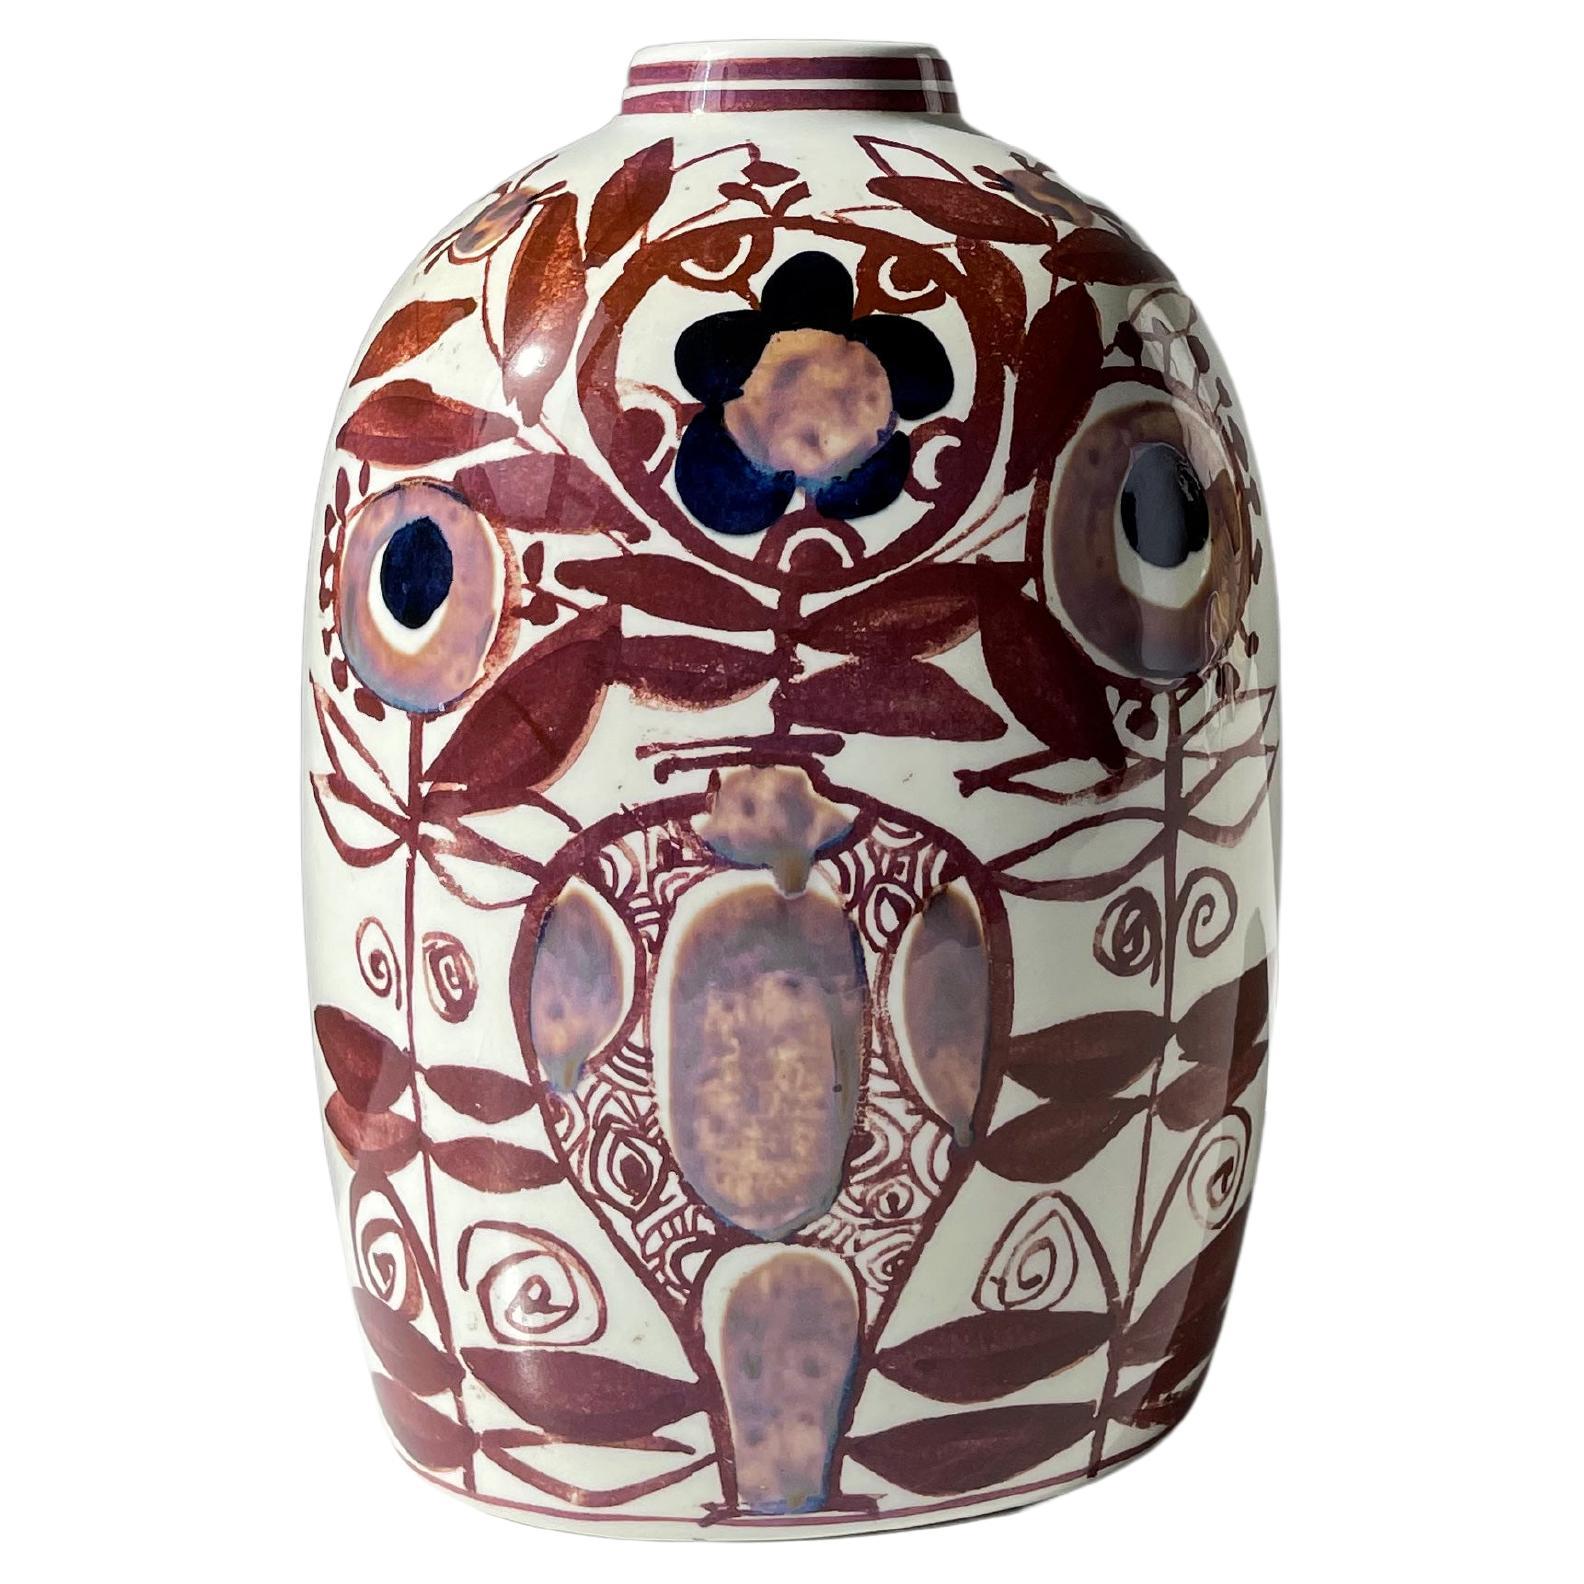 Vase de forme ovale en faïence moderne du milieu du siècle avec un décor floral organique peint à la main dans des couleurs chaudes de brun cannelle, de terre d'ombre claire et de bleu foncé sur une base blanche propre. Les décorations complexes